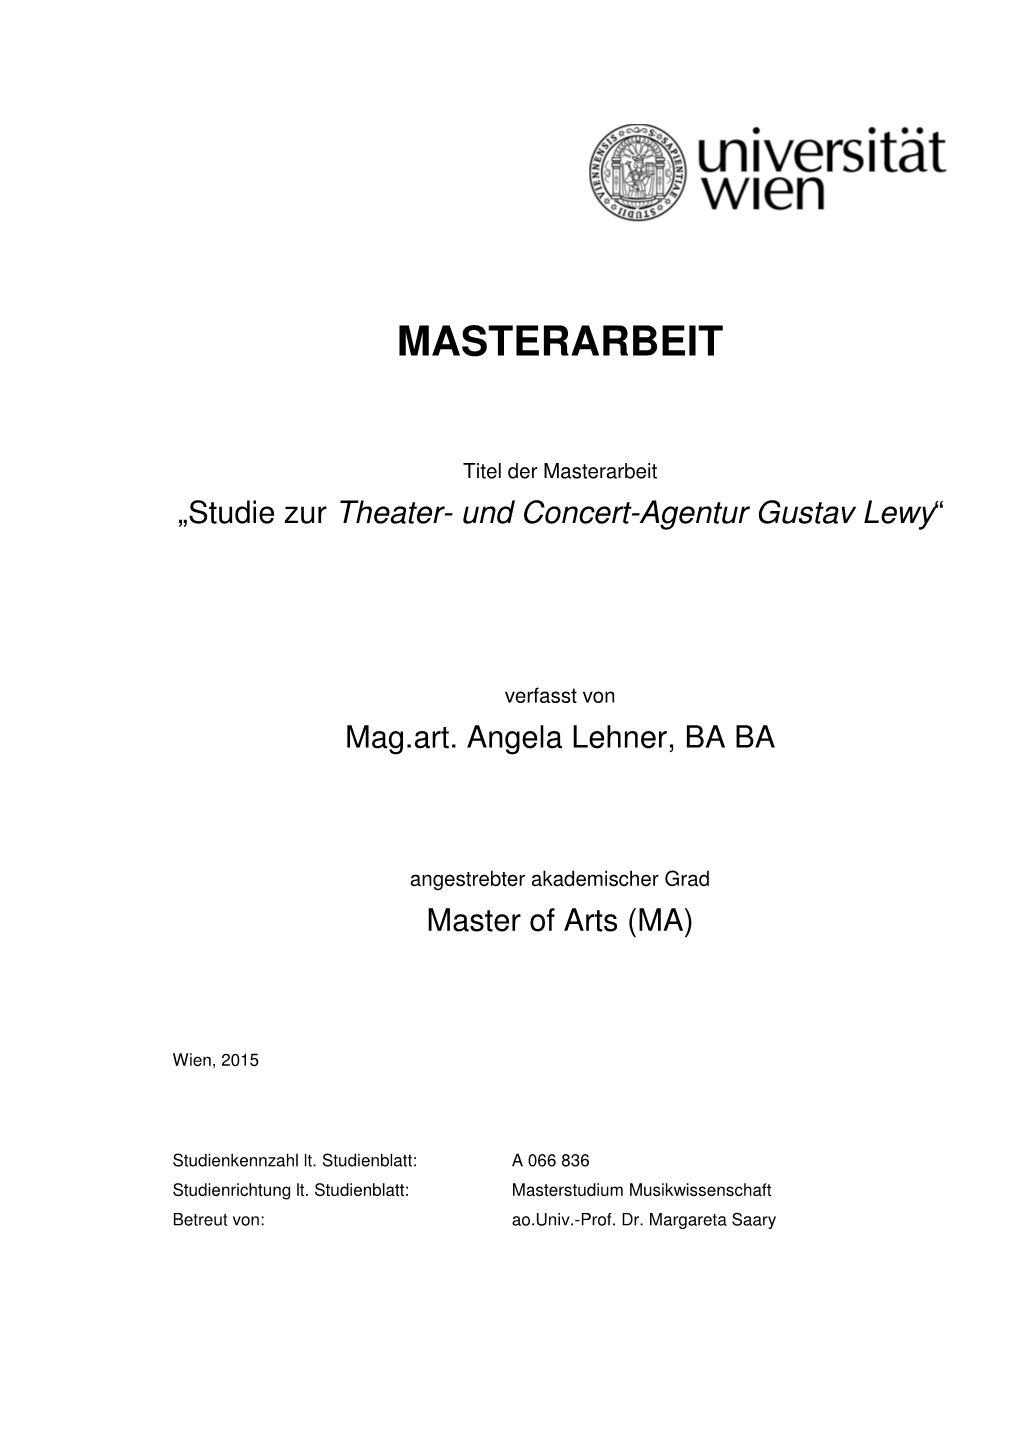 Studie Zur Theater- Und Concert-Agentur Gustav Lewy“